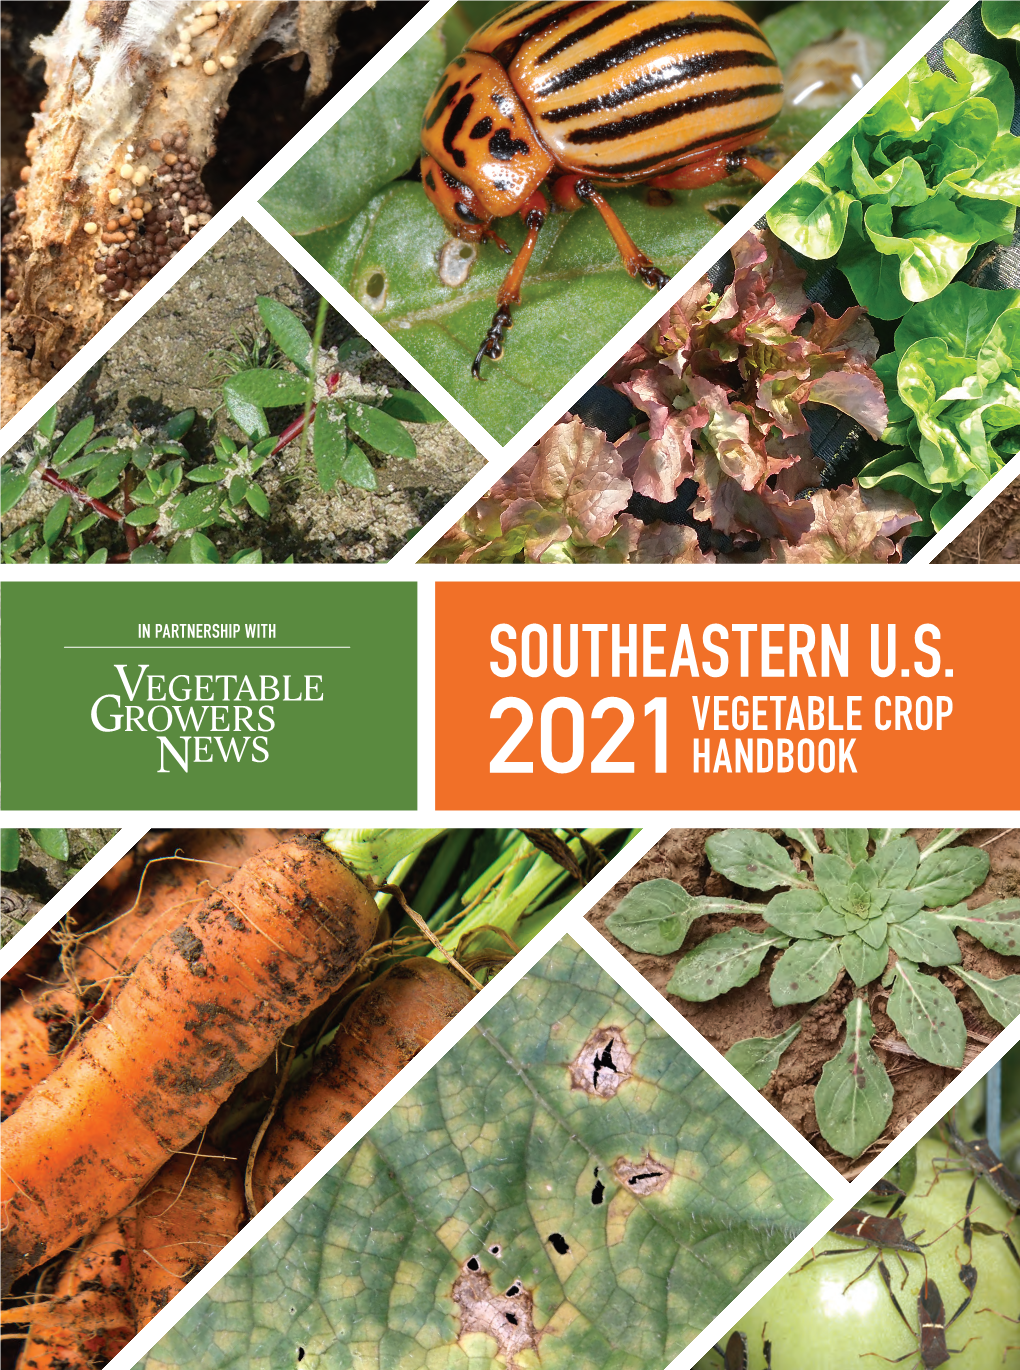 2021 Southeastern U.S. Vegetable Crop Handbook